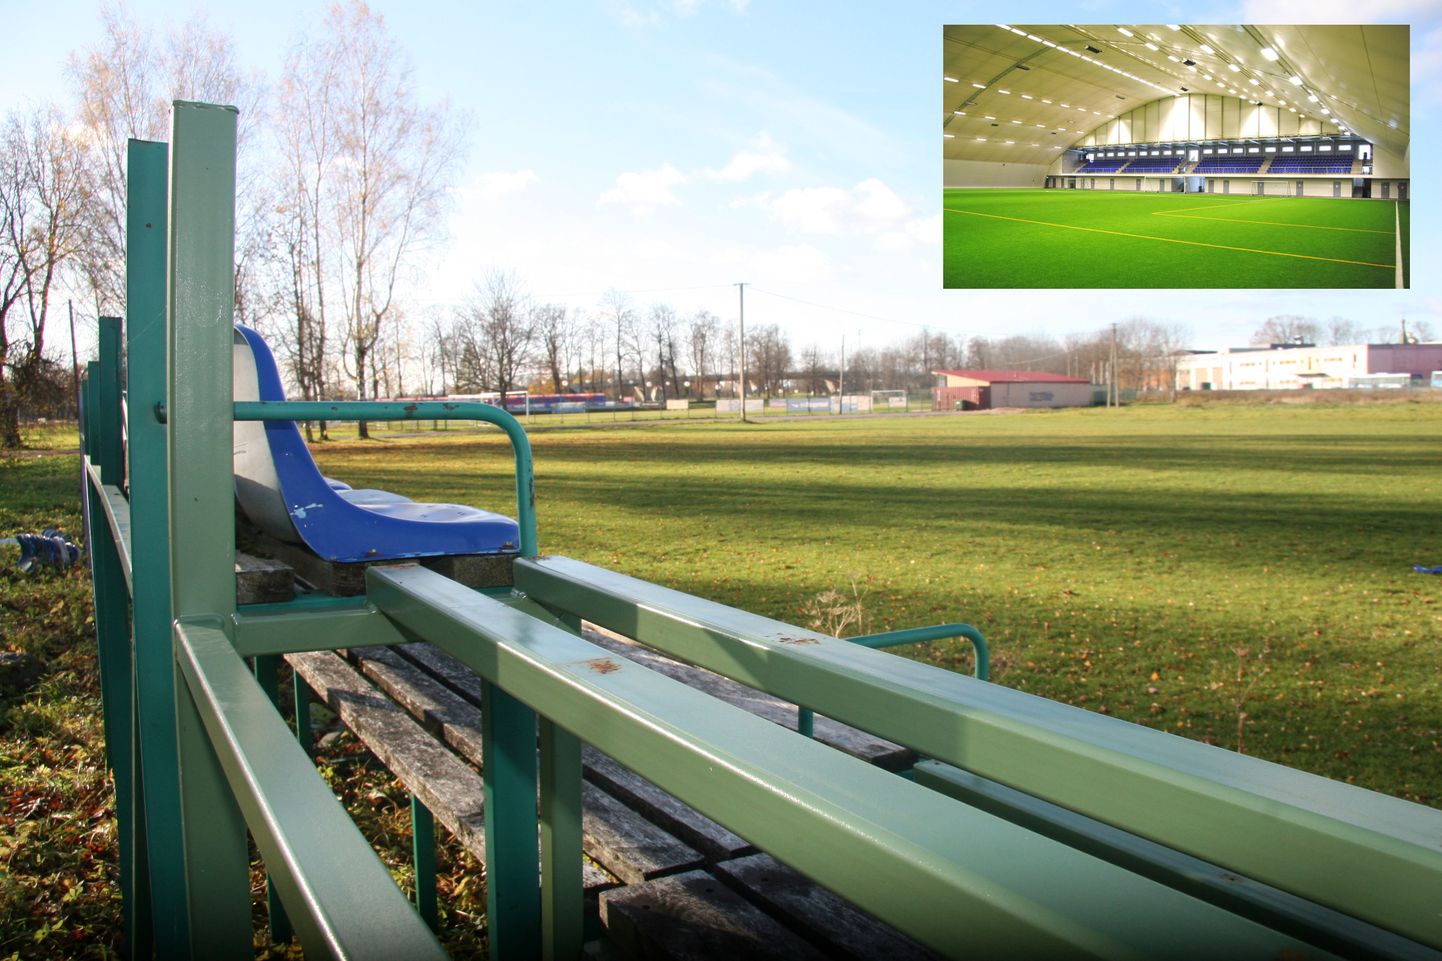 Будущий футбольный холл появится рядом с железной дорогой вблизи нынешнего футбольного стадиона. Между ними планируется построить еще одно футбольное поле с искусственным газоном.